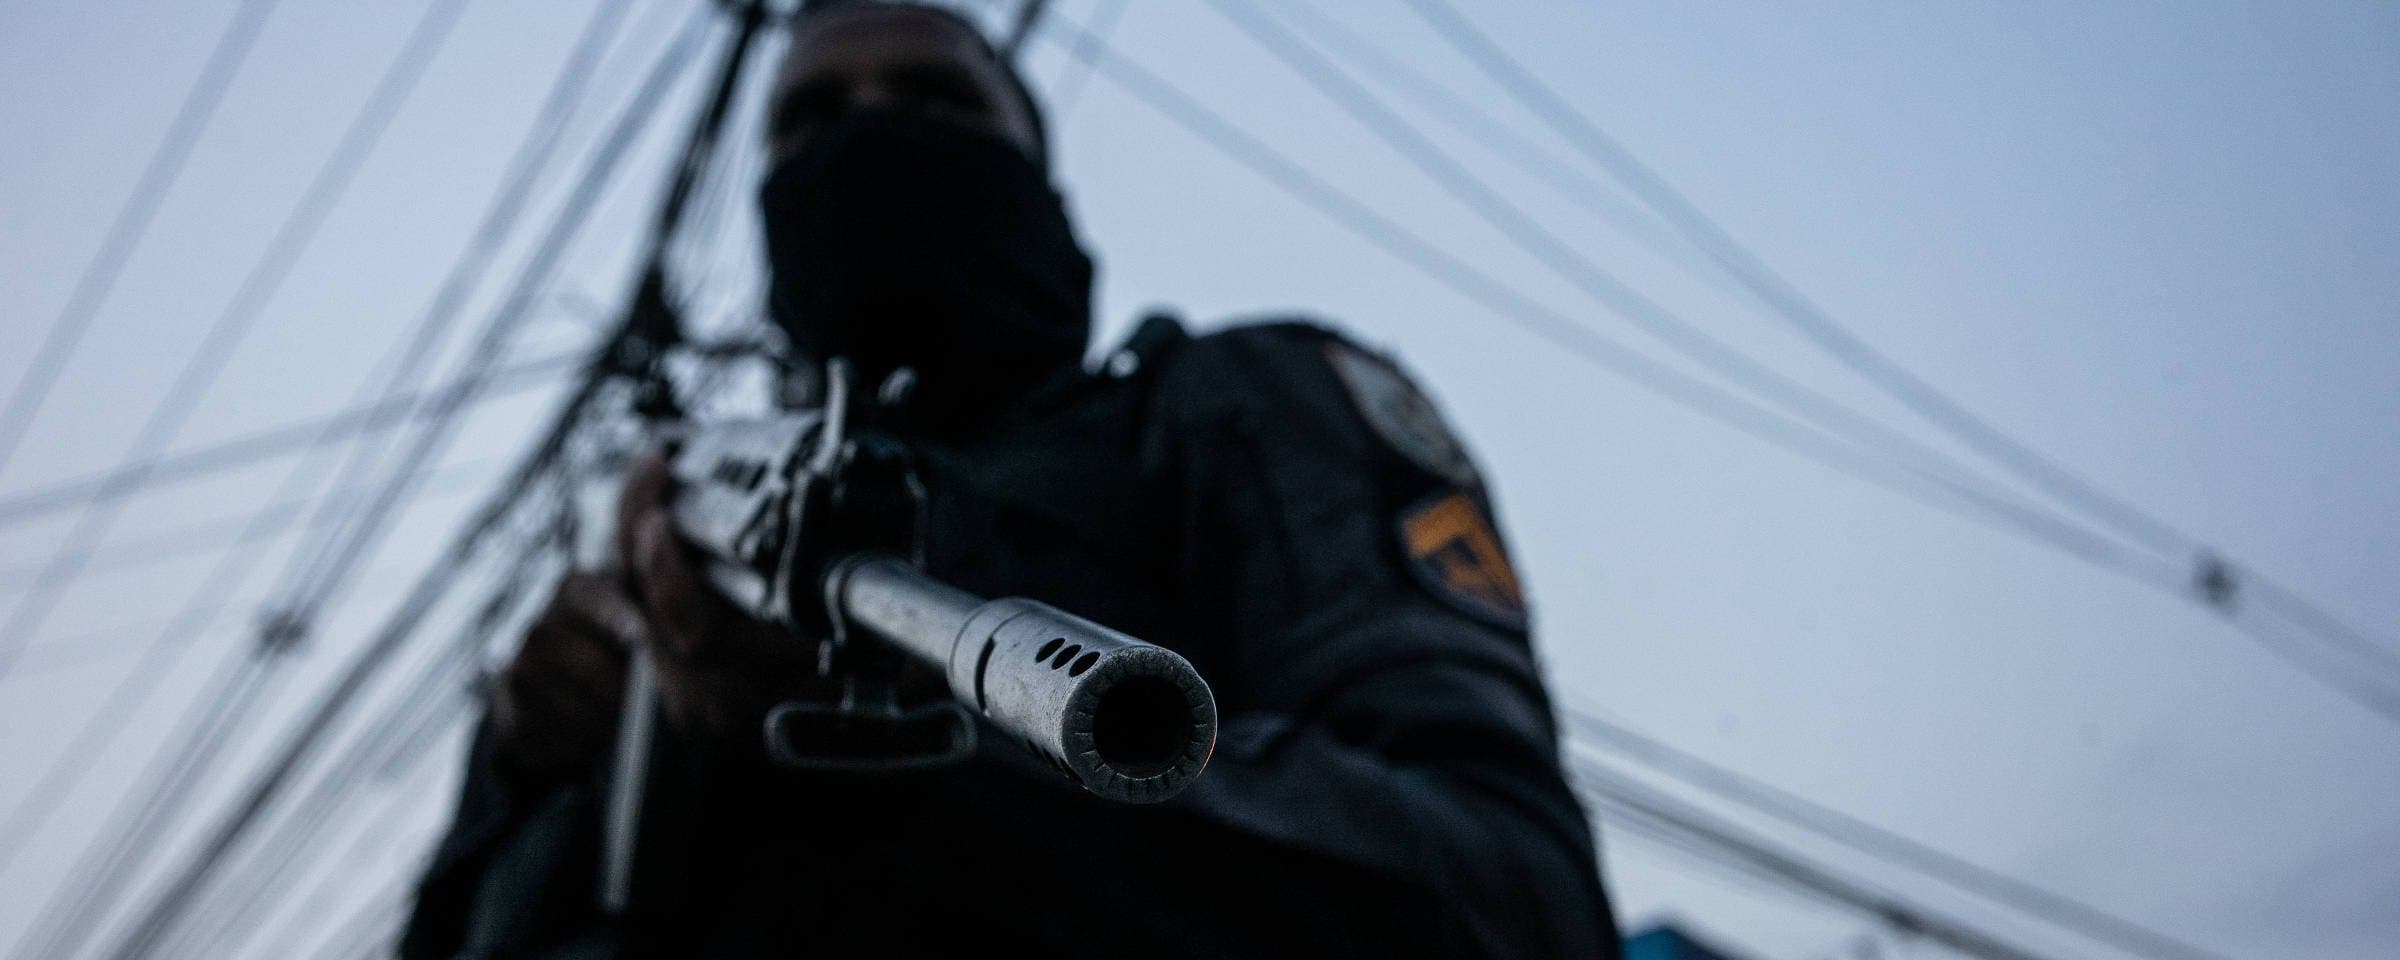 Policiais cometeram 38% dos homicídios no RJ nos últimos 7 meses